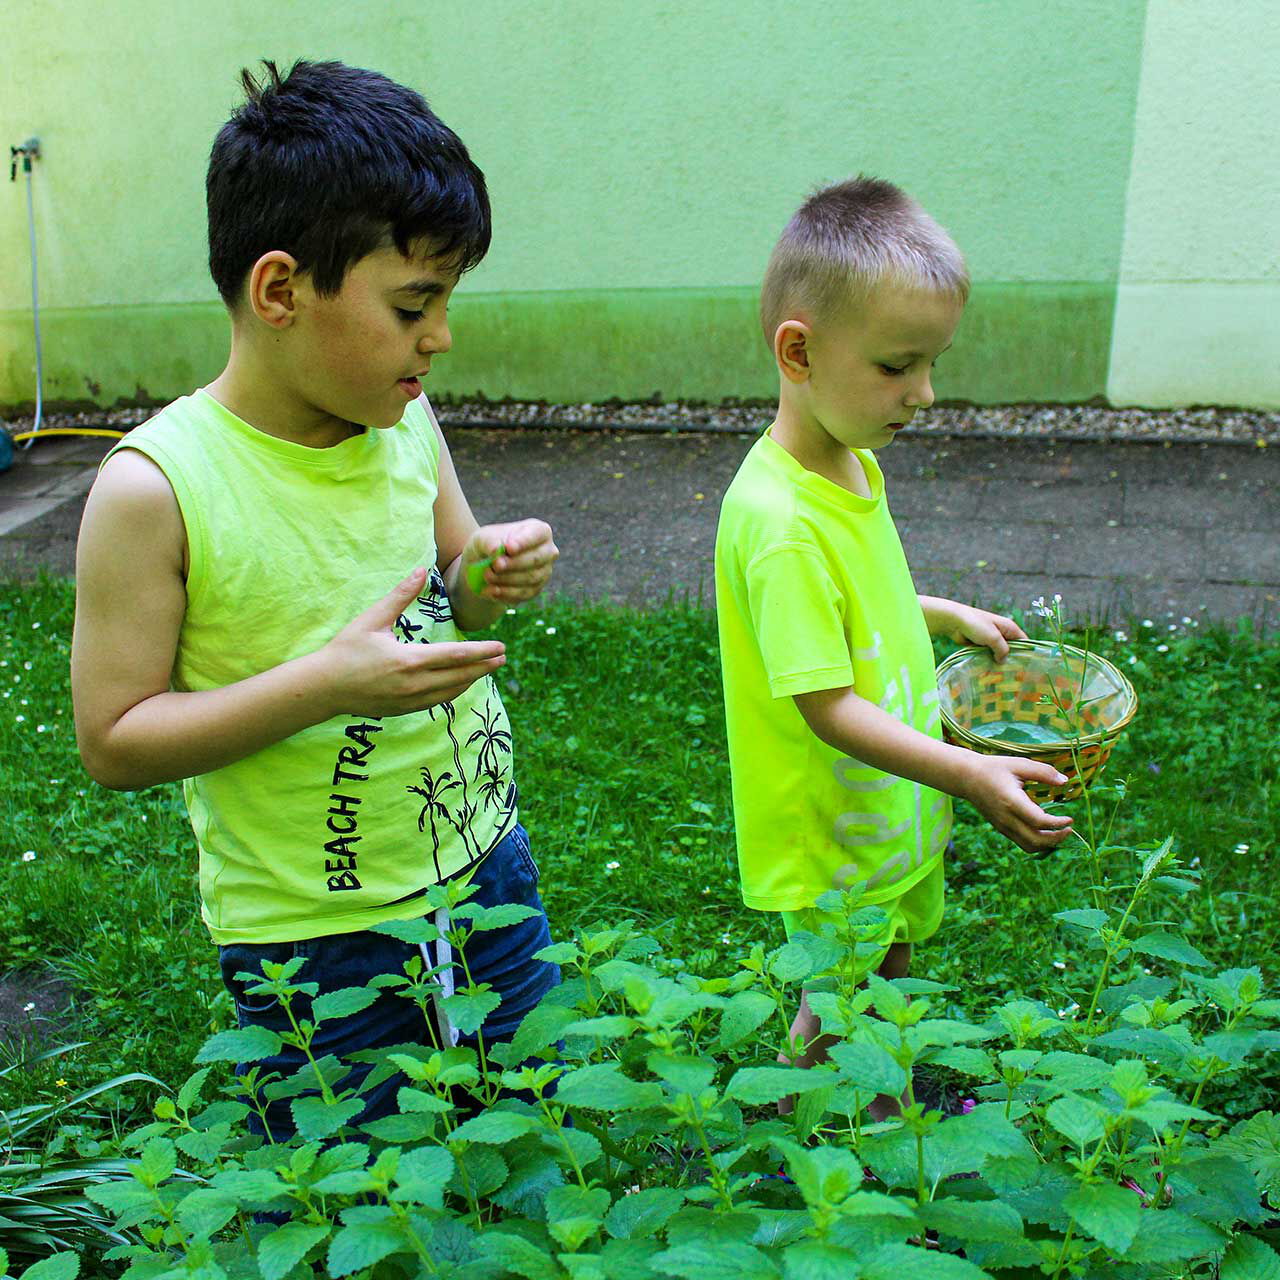 Zwei Kleinkinder sammeln unterschiedliche Kräuter in einem Beet.